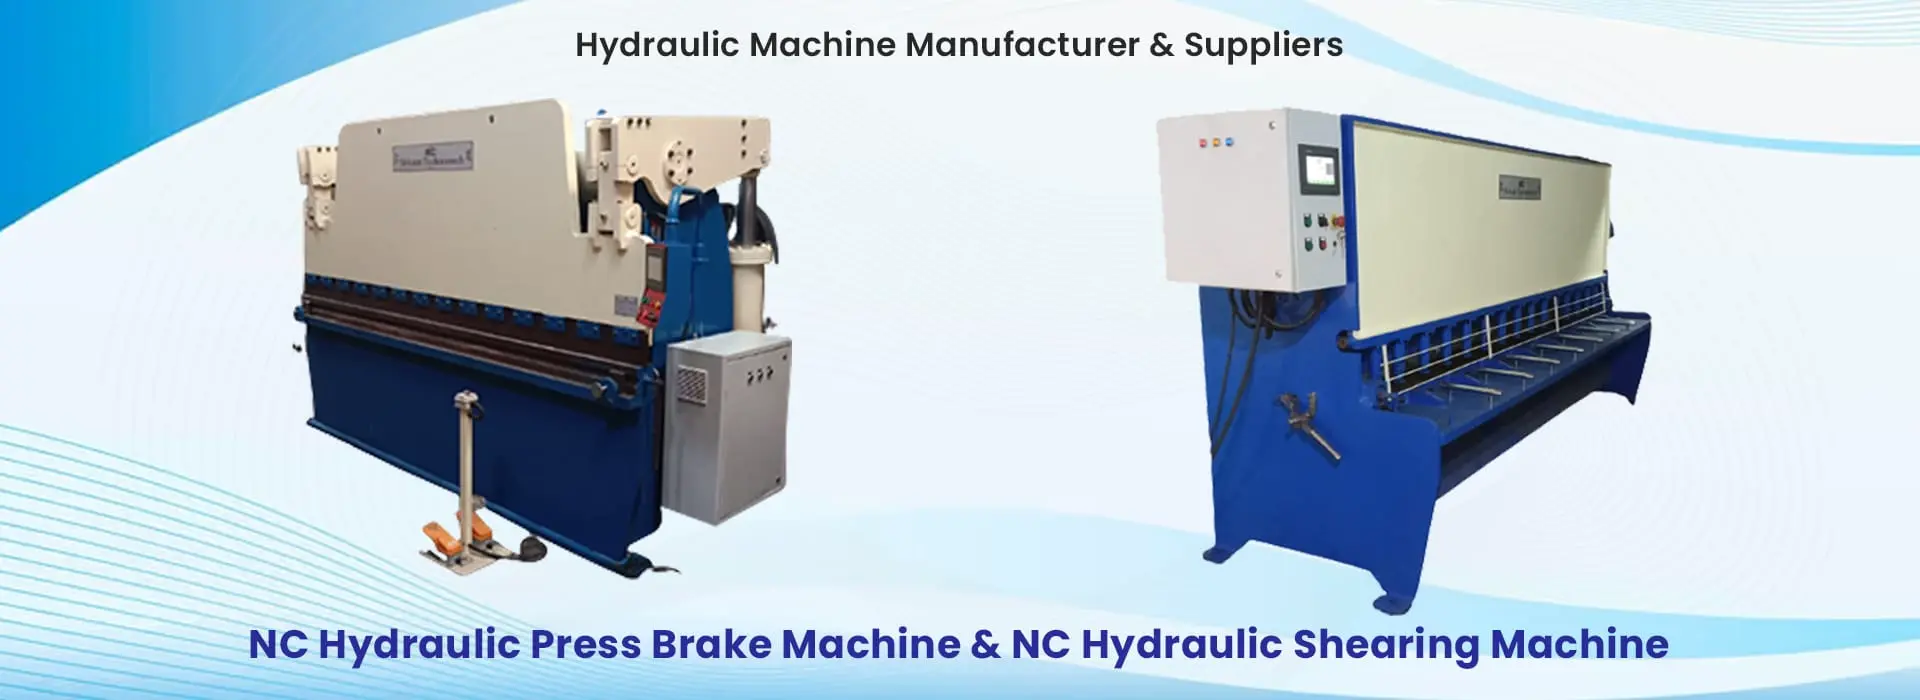 home-banner-full - Hydraulic Machine manufacturer & Supplier